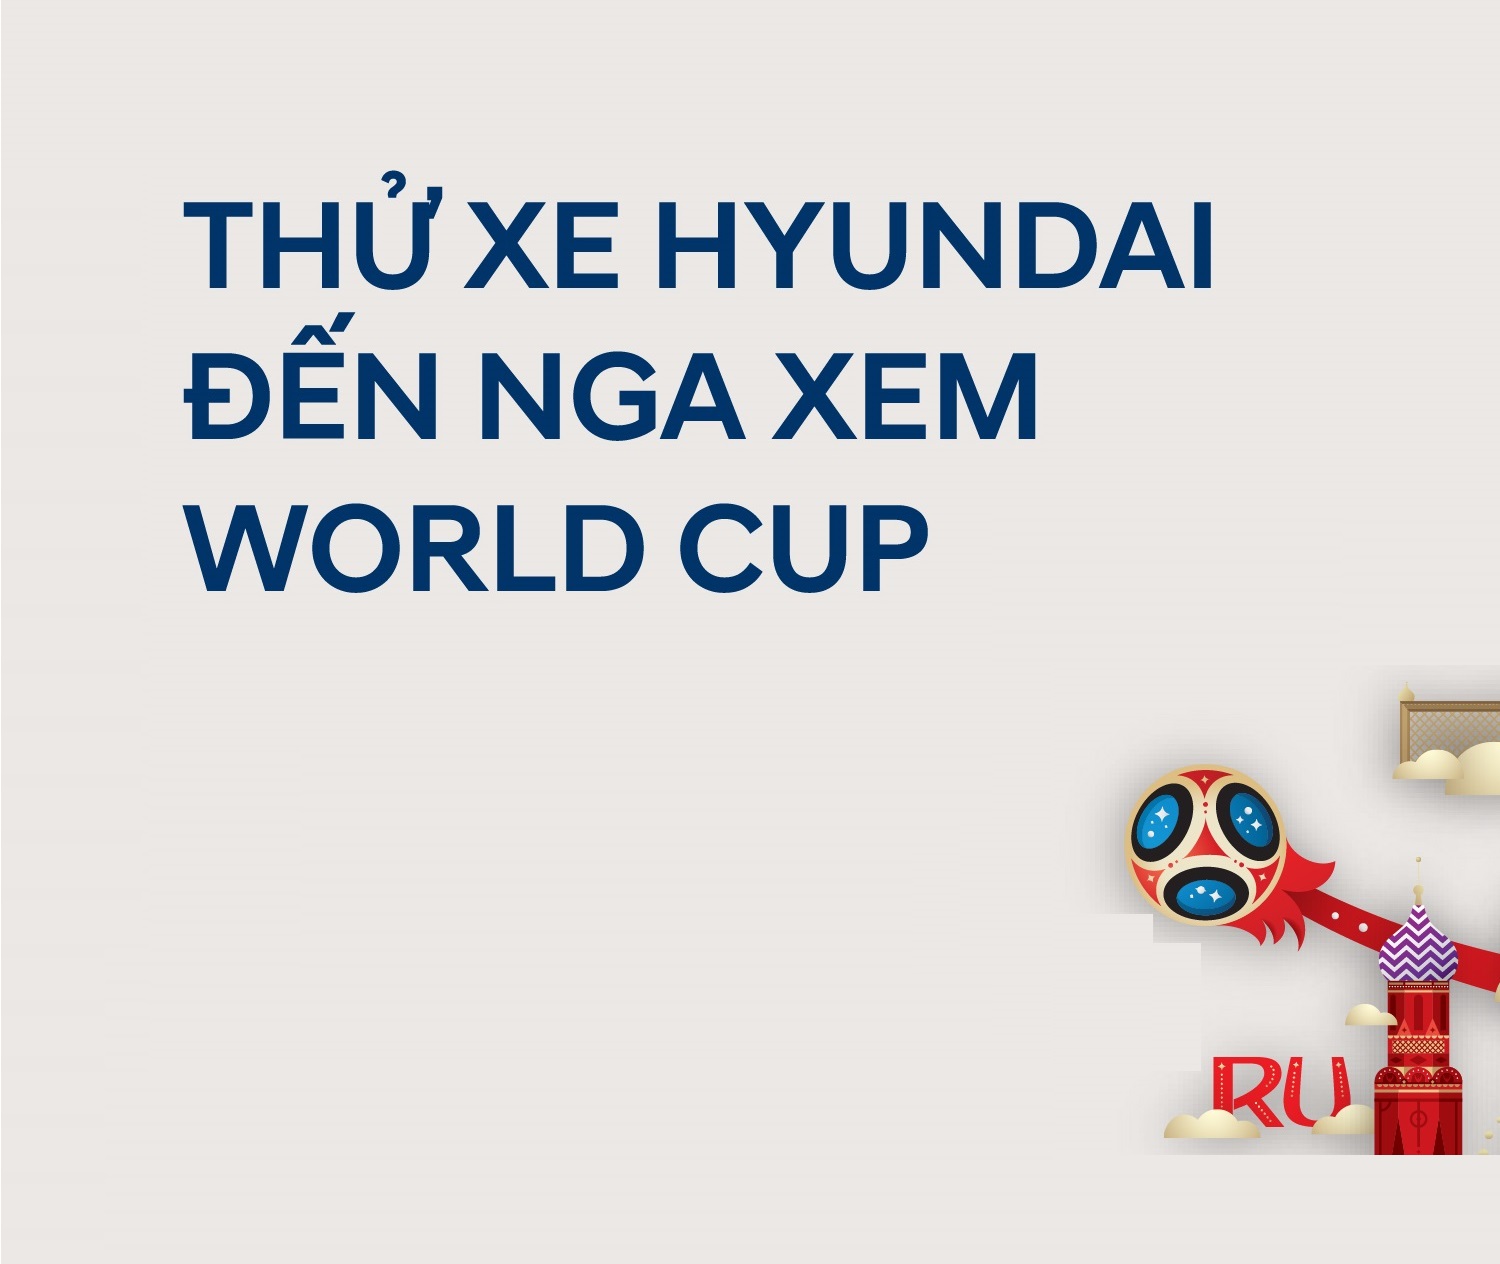 "THỬ XE HYUNDAI – ĐẾN NGA XEM WORLD CUP" tại Showroom Hyundai Long Biên, thứ 7, ngày 24/03/2018